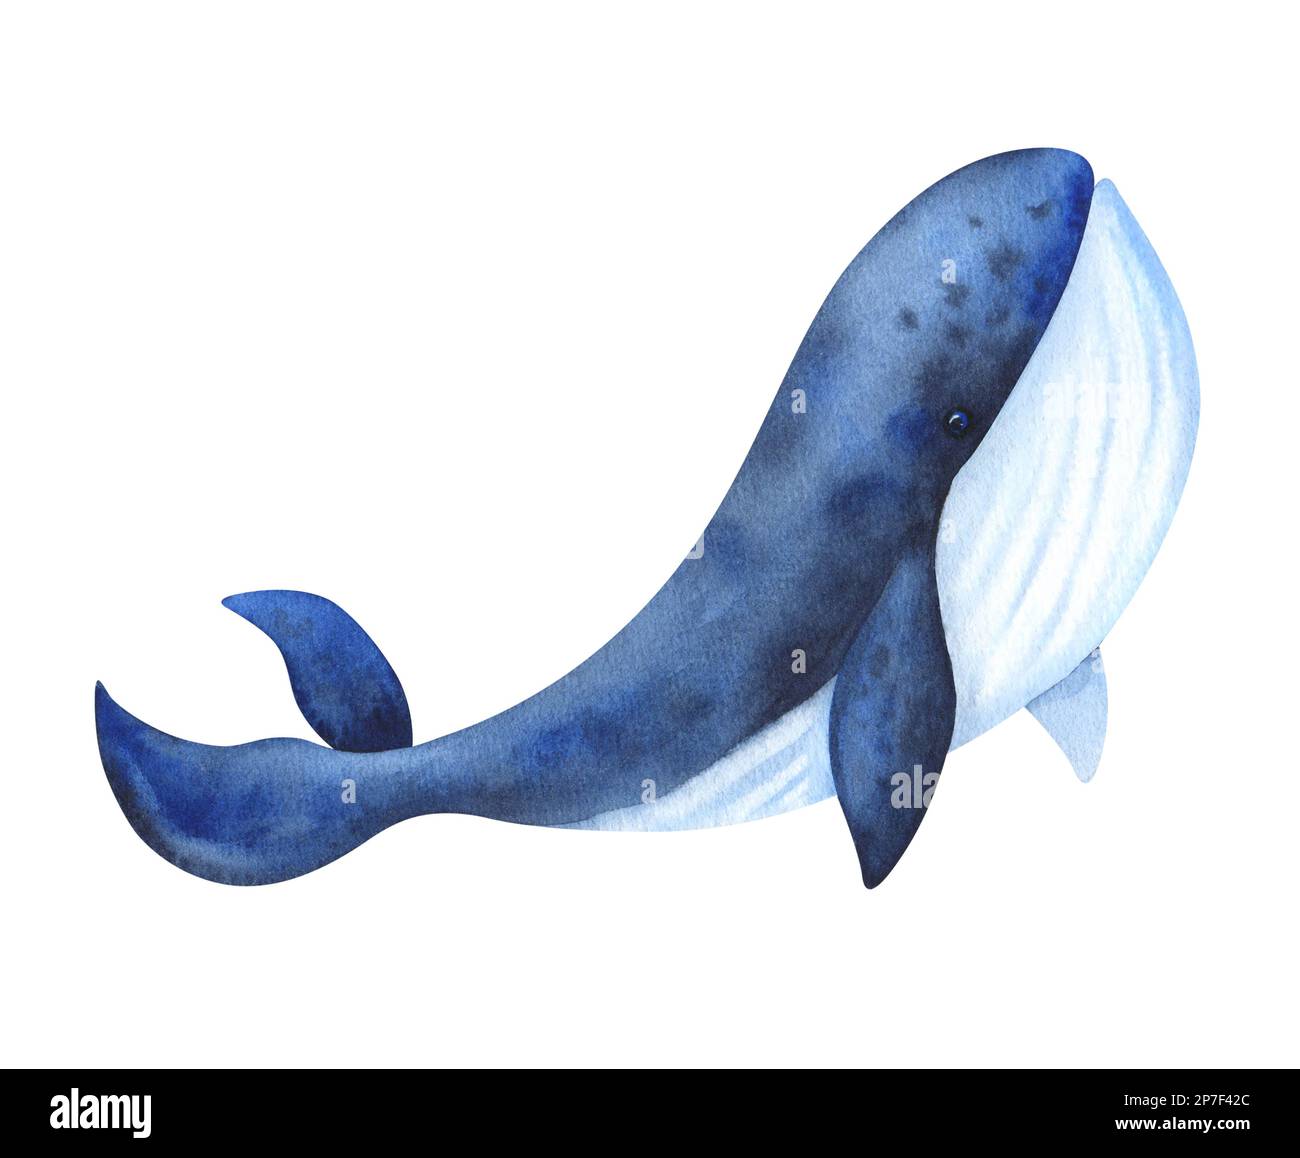 Illustration isolée sur fond blanc baleine bleue. Peint à l'aquarelle. Pour la conception, l'emballage, la publicité et plus encore Banque D'Images